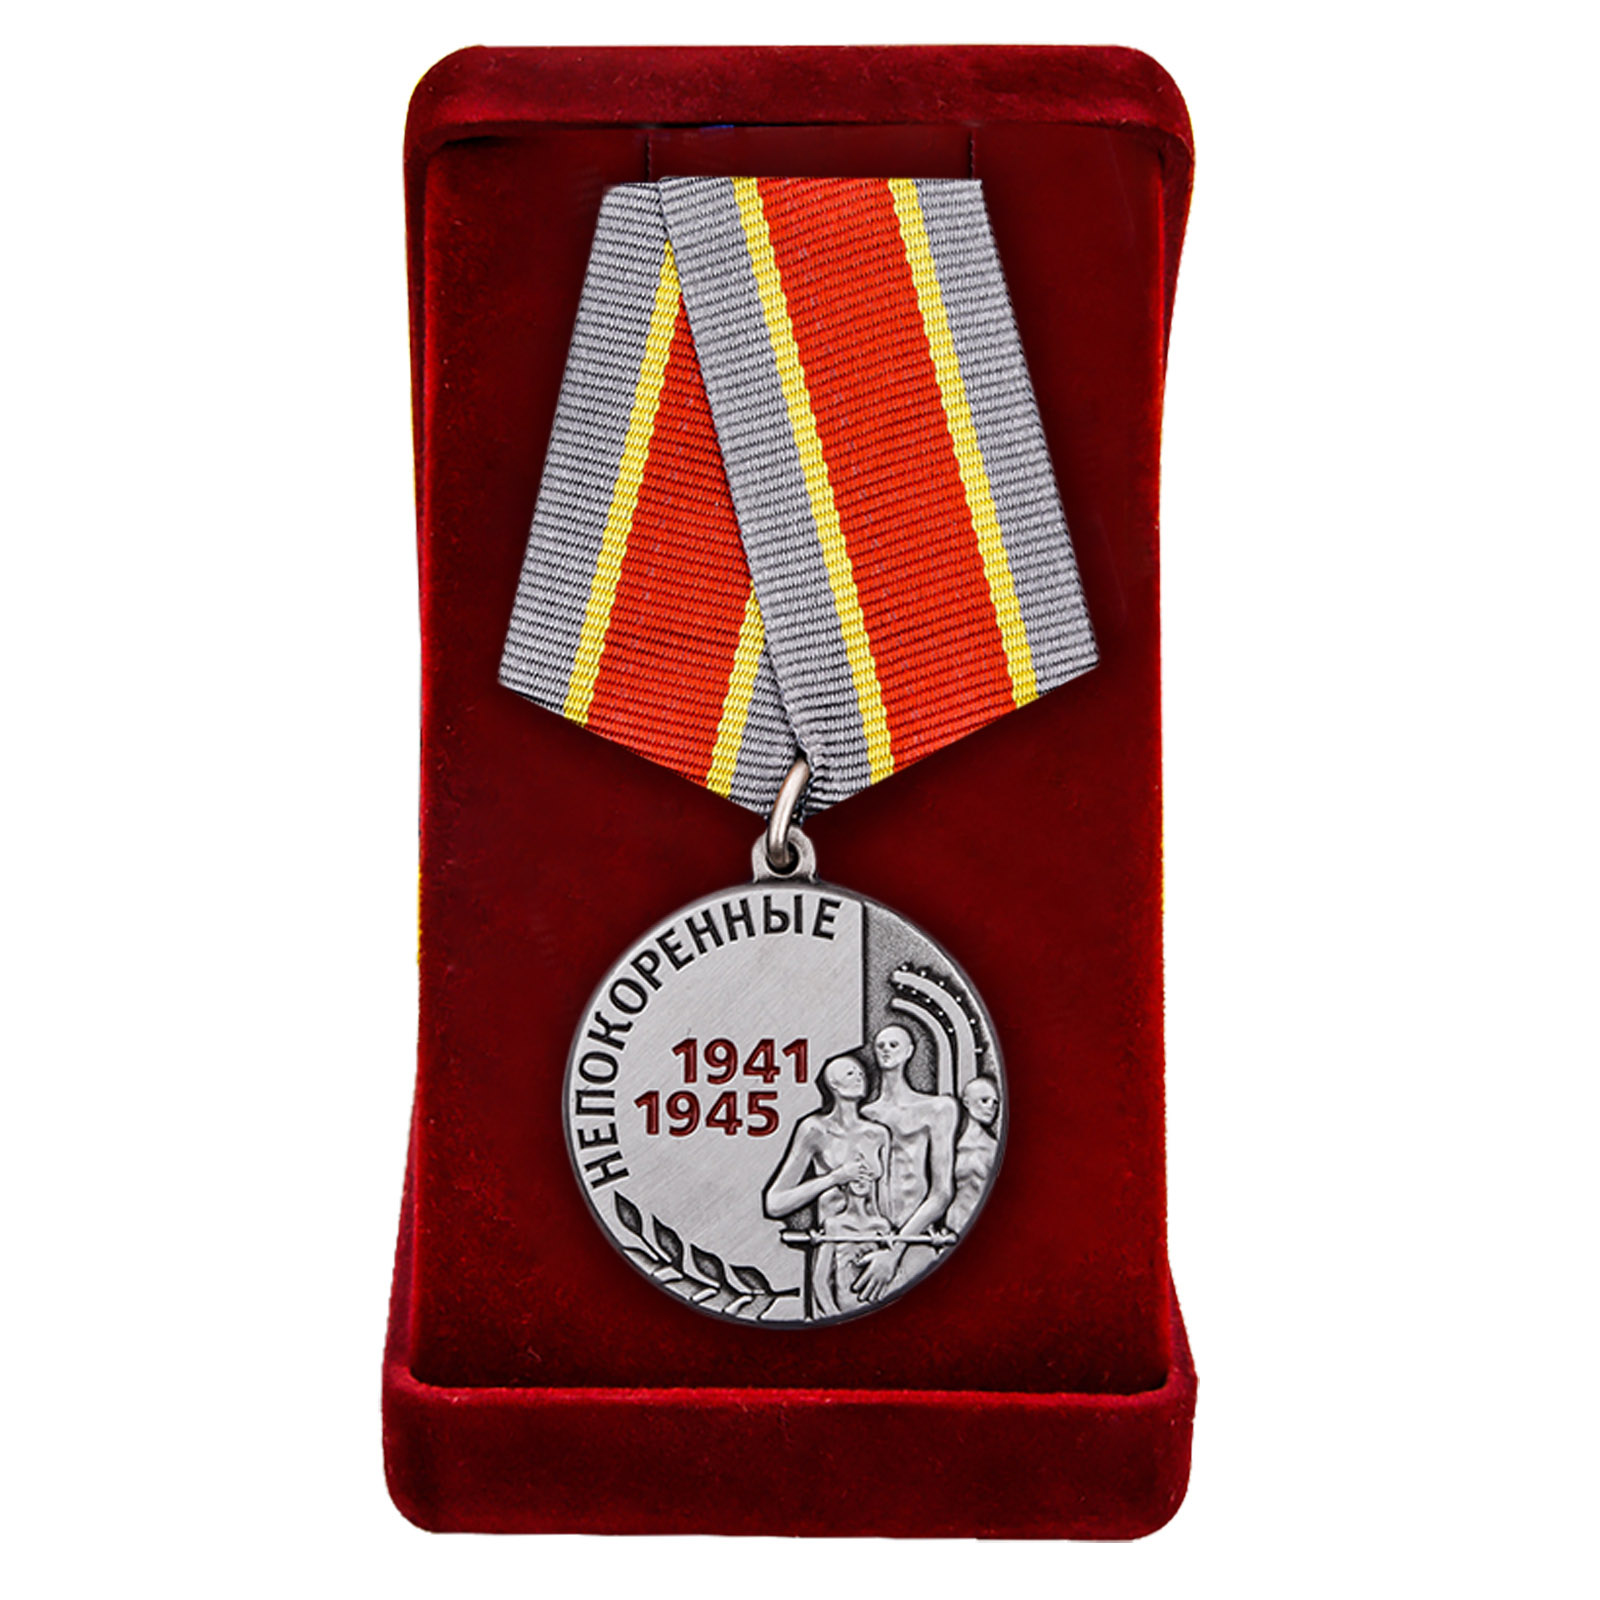 Купить латунную медаль Узникам концлагерей на 75 лет Победы выгодно оптом